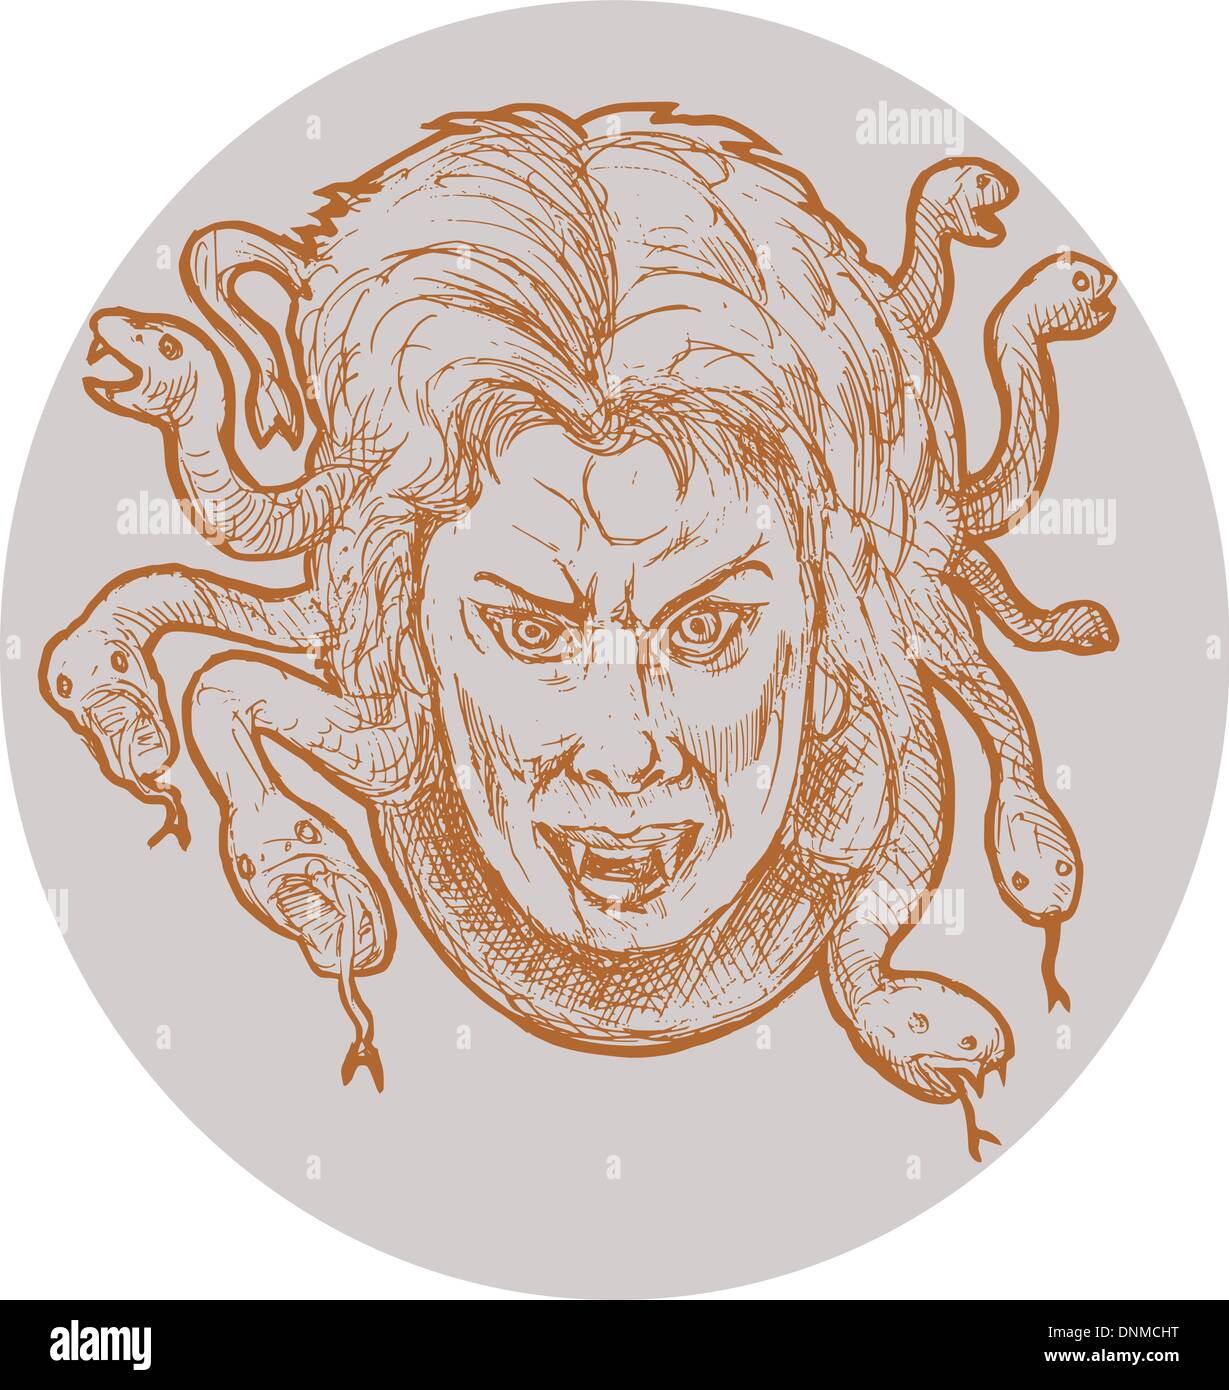 Mano abbozzato illustrazione della gorgone mostro femmina Medusa della  mitologia greca che ha serpenti come capelli Immagine e Vettoriale - Alamy